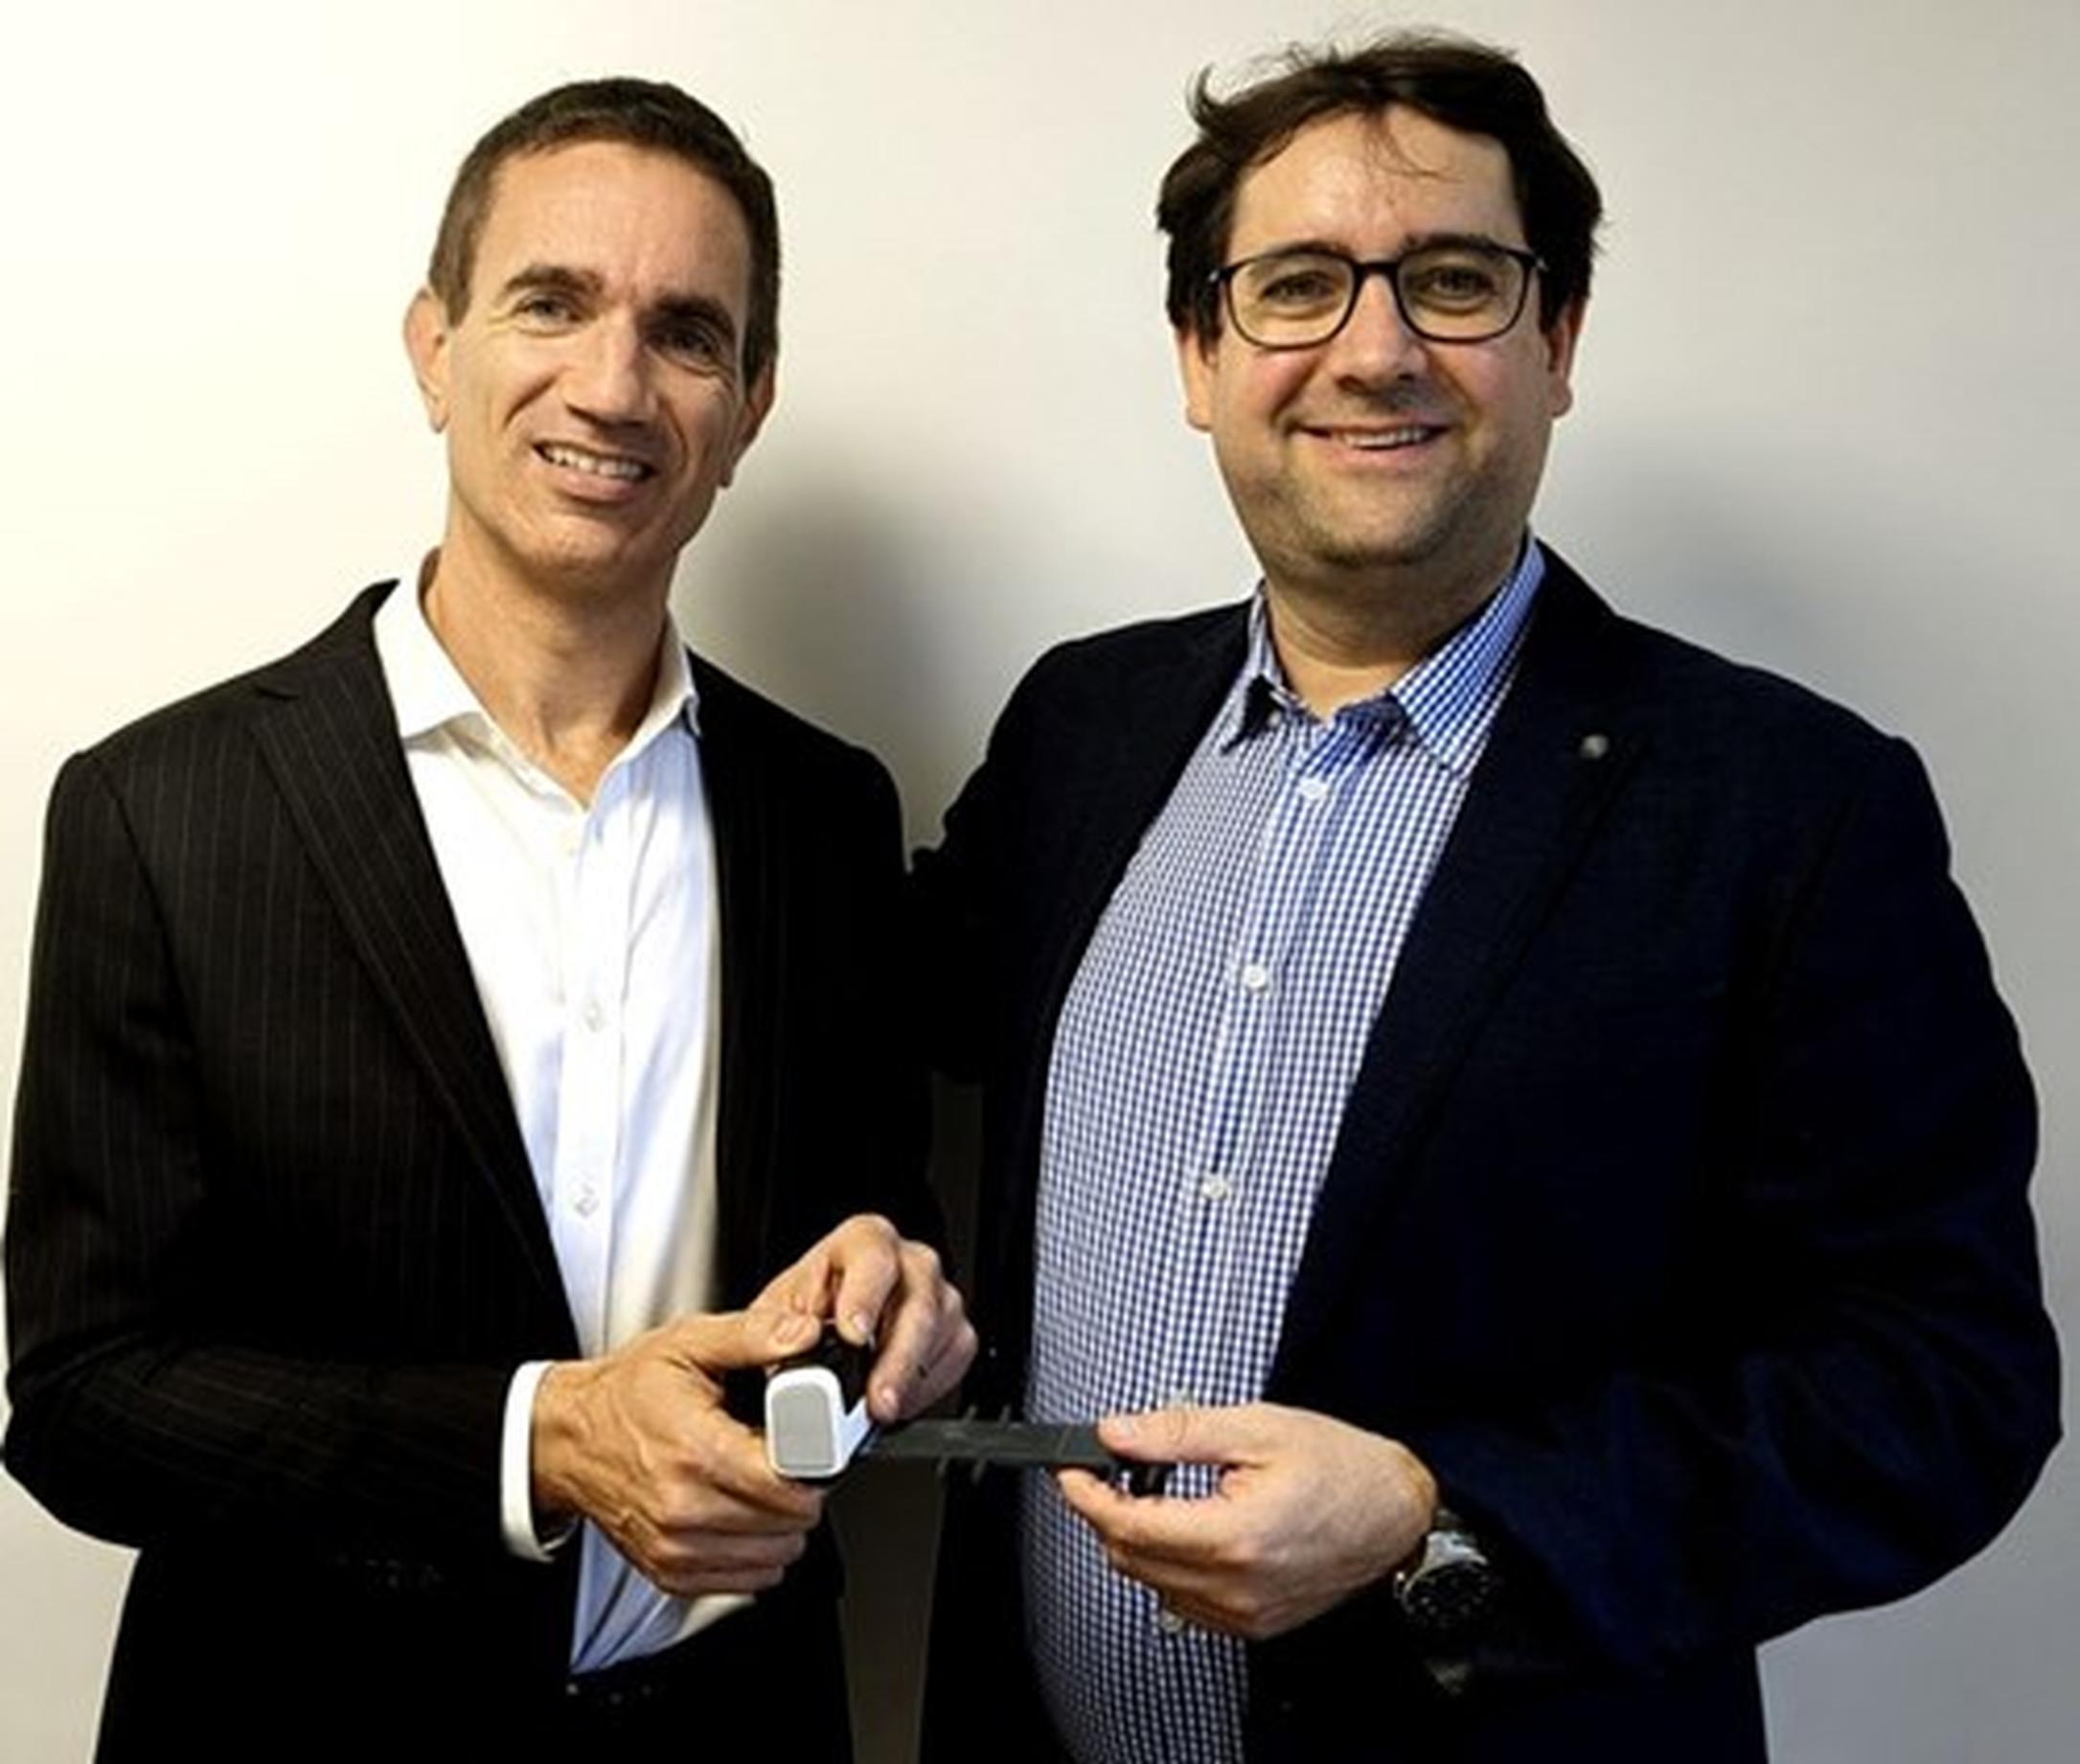 Olivier Benguigui and Clément Boussard